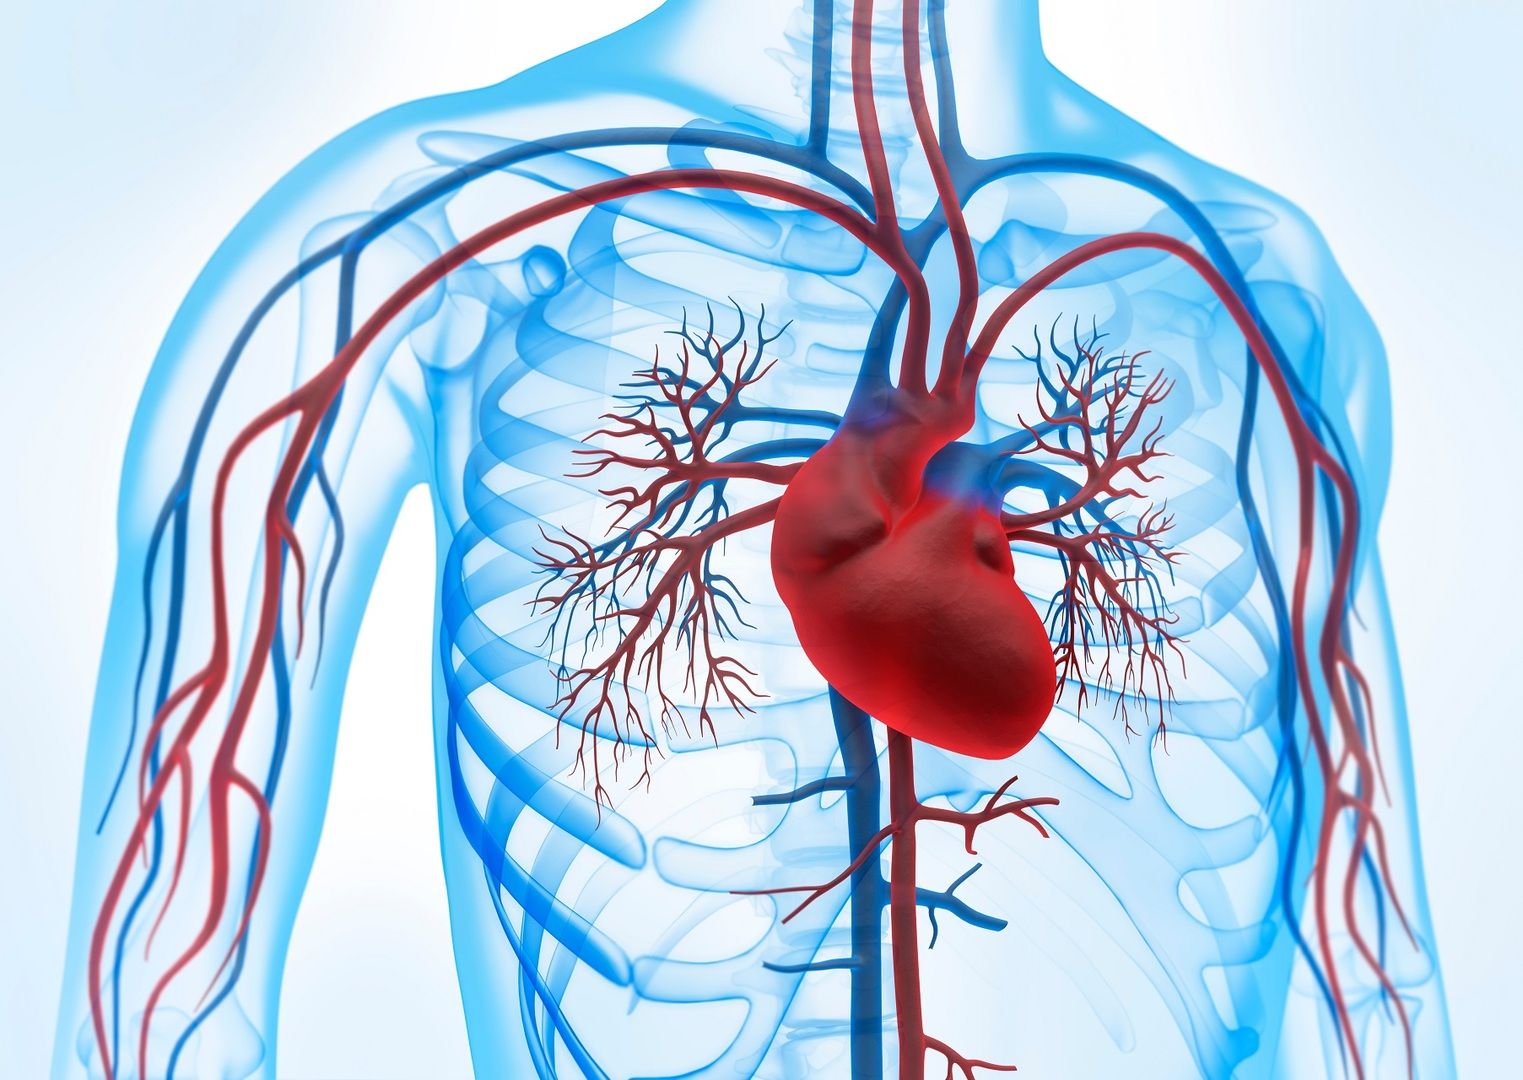 Illustration de la circulation sanguine et du cœur - Notre système cardio-vasculaire est essentiel à notre santé. Mais comment pouvons-nous prévenir les maladies ?